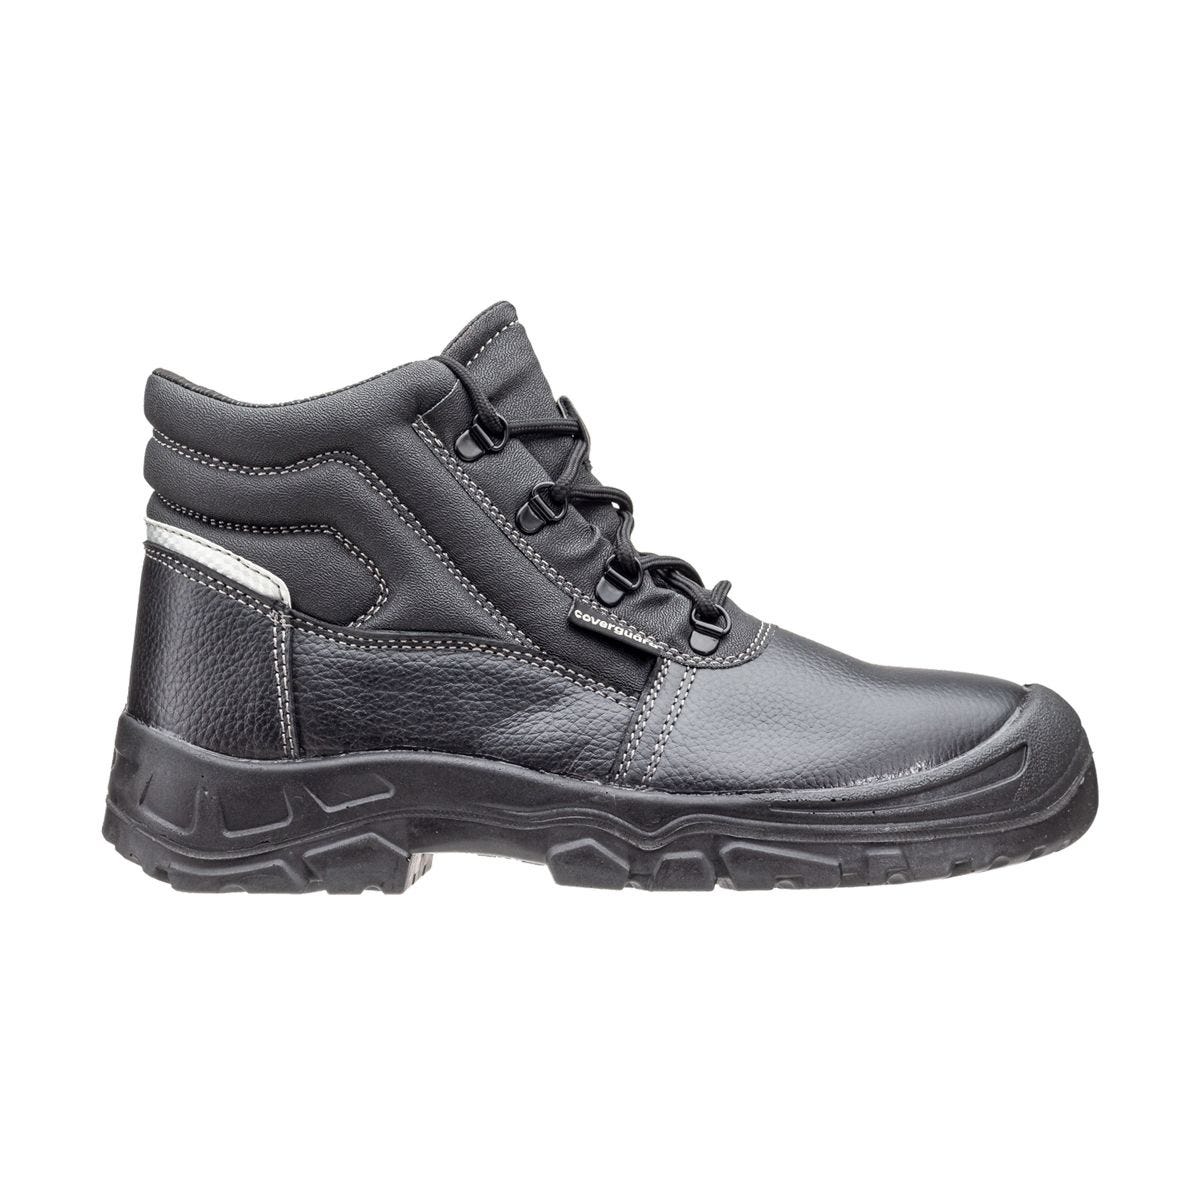 Chaussures de sécurité hautes Azurite II S3 ESD noir - Coverguard - Taille 43 1